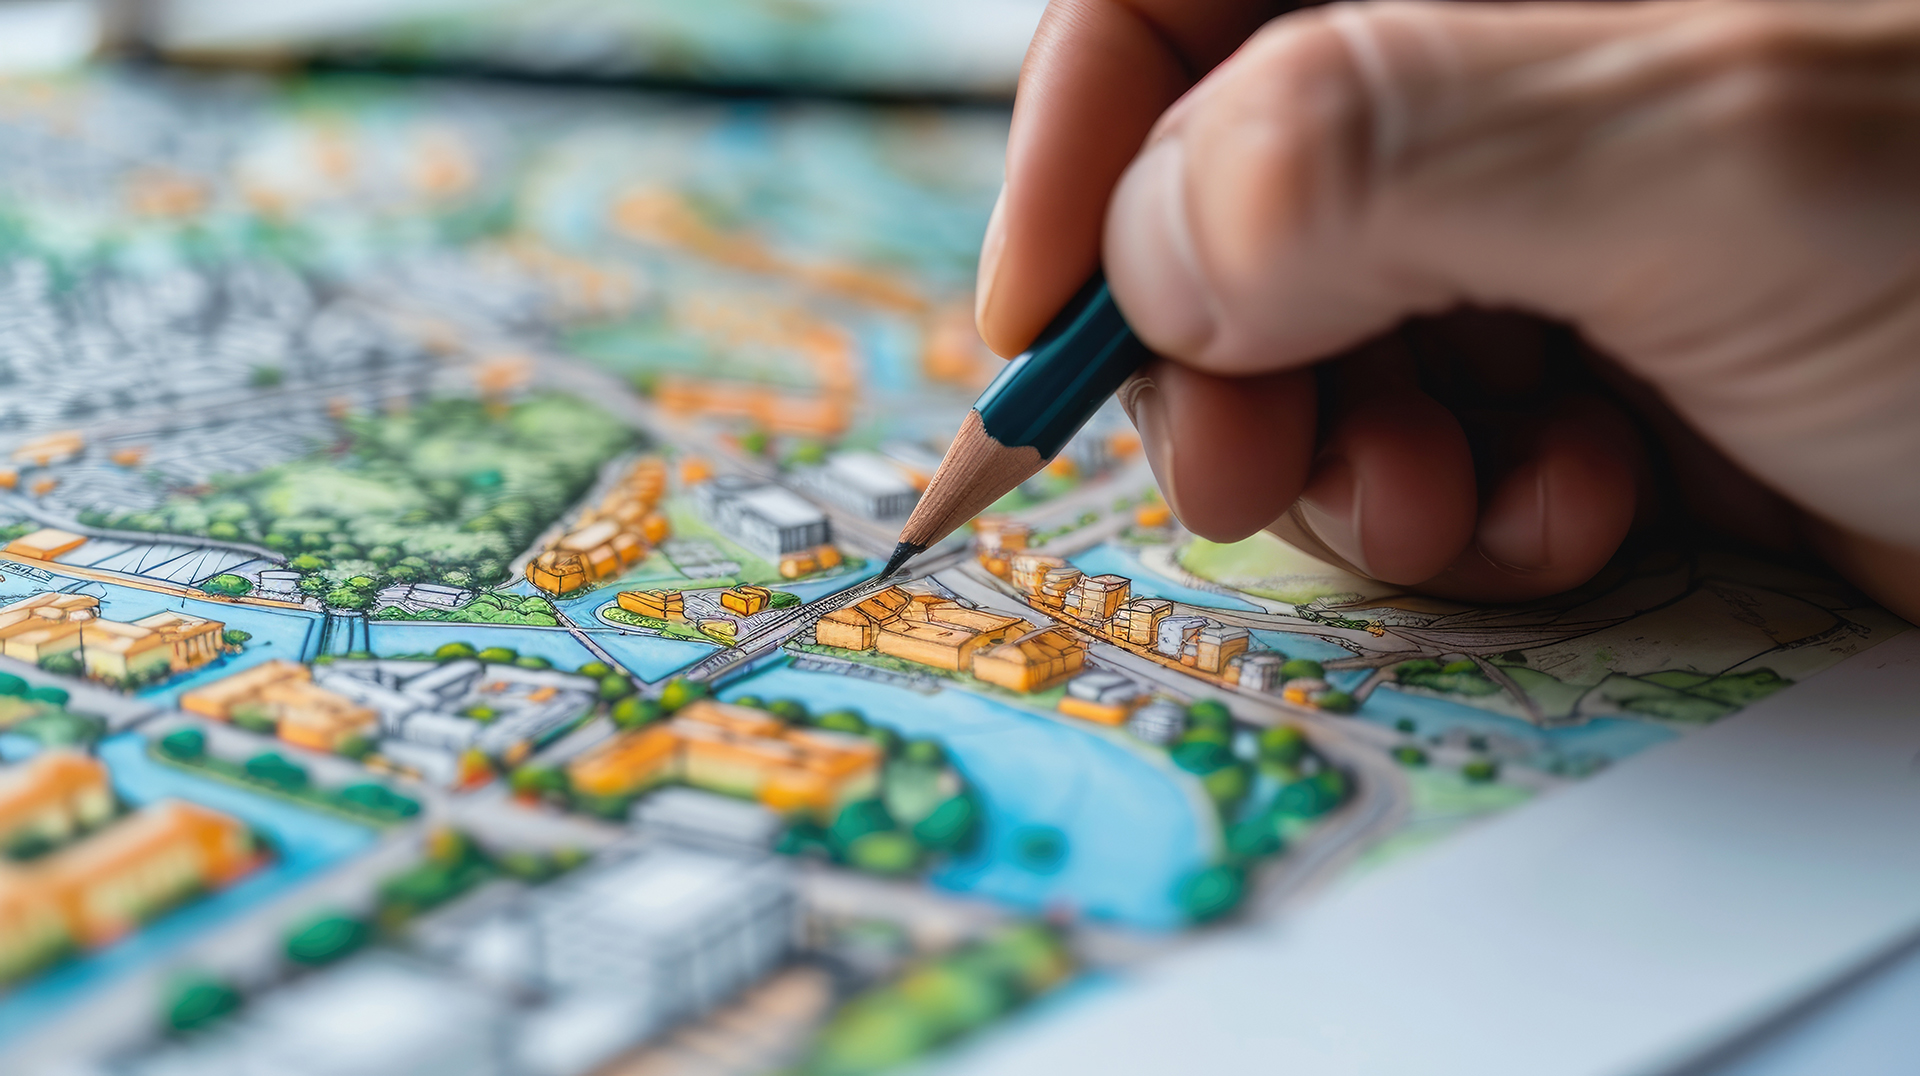 Kaupunkisuunnittelukartta, jossa puiden, talojen, teiden ja vesistöjen kohokuvioita ja eri värejä. Lyijykynän pää osoittaa karttaa